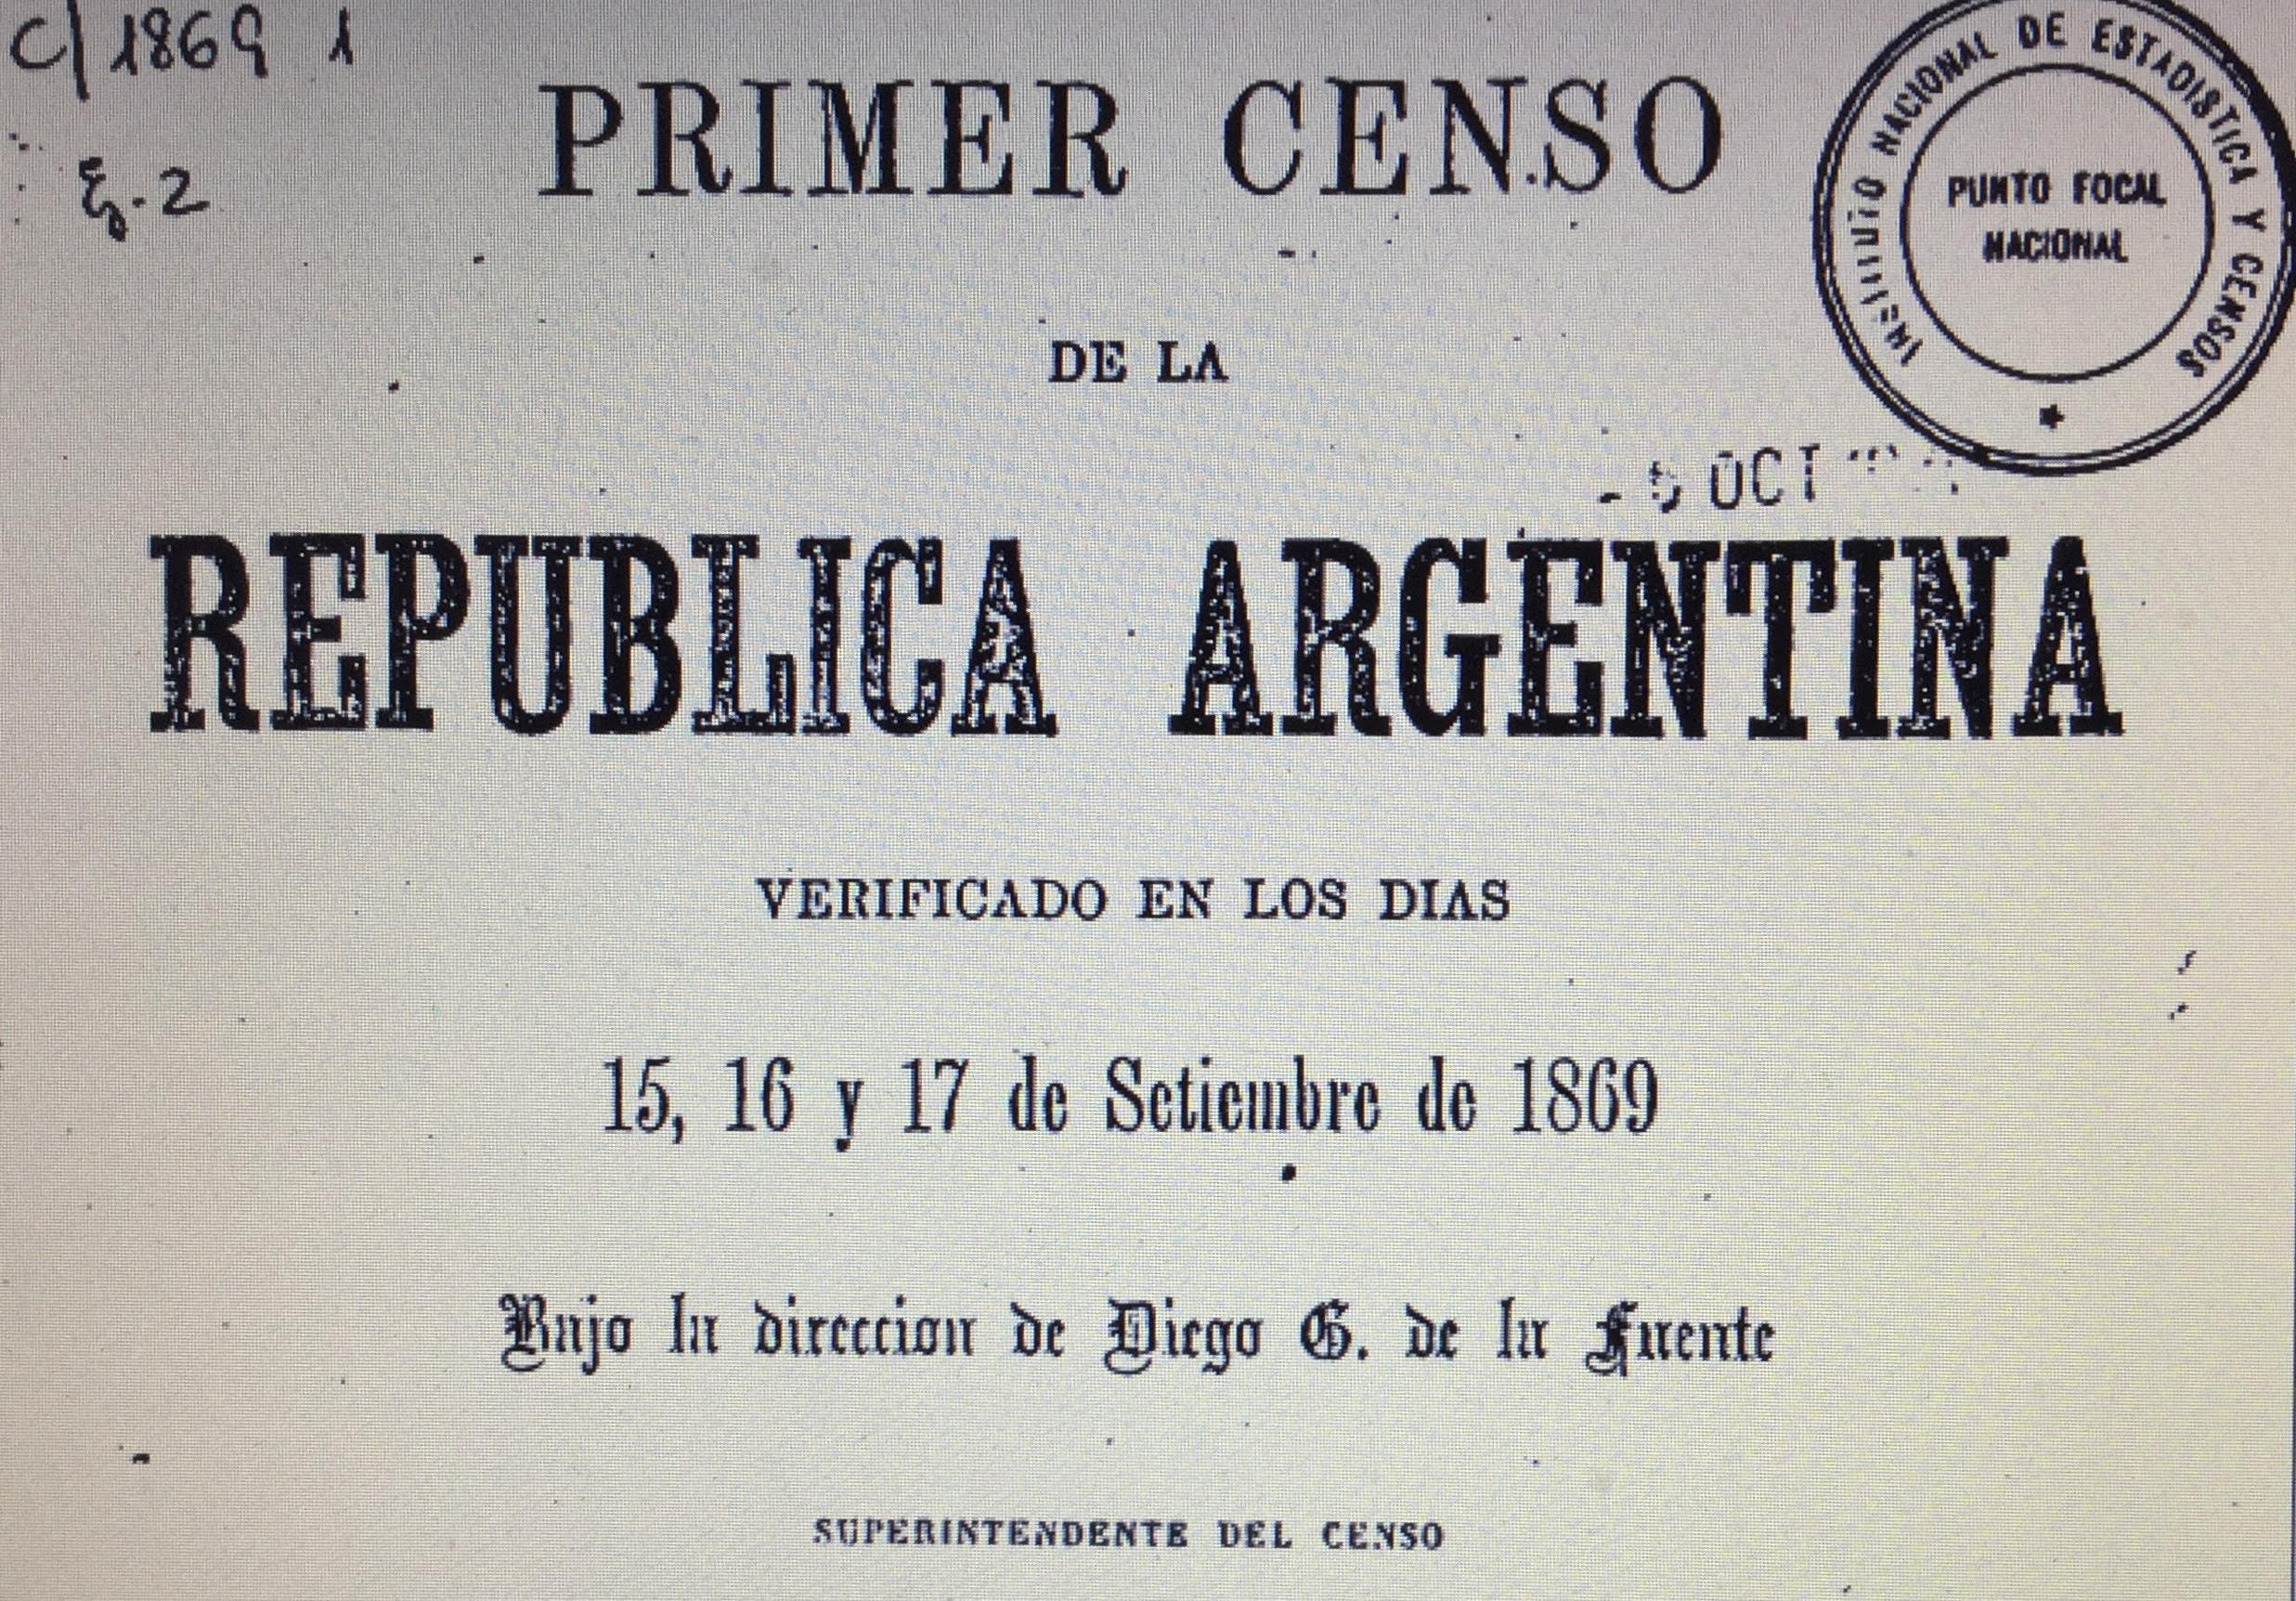 El primer censo nacional en el país se llevó a cabo entre el 15 y el 17 de septiembre de 1869, bajo la presidencia de Domingo F. Sarmiento.